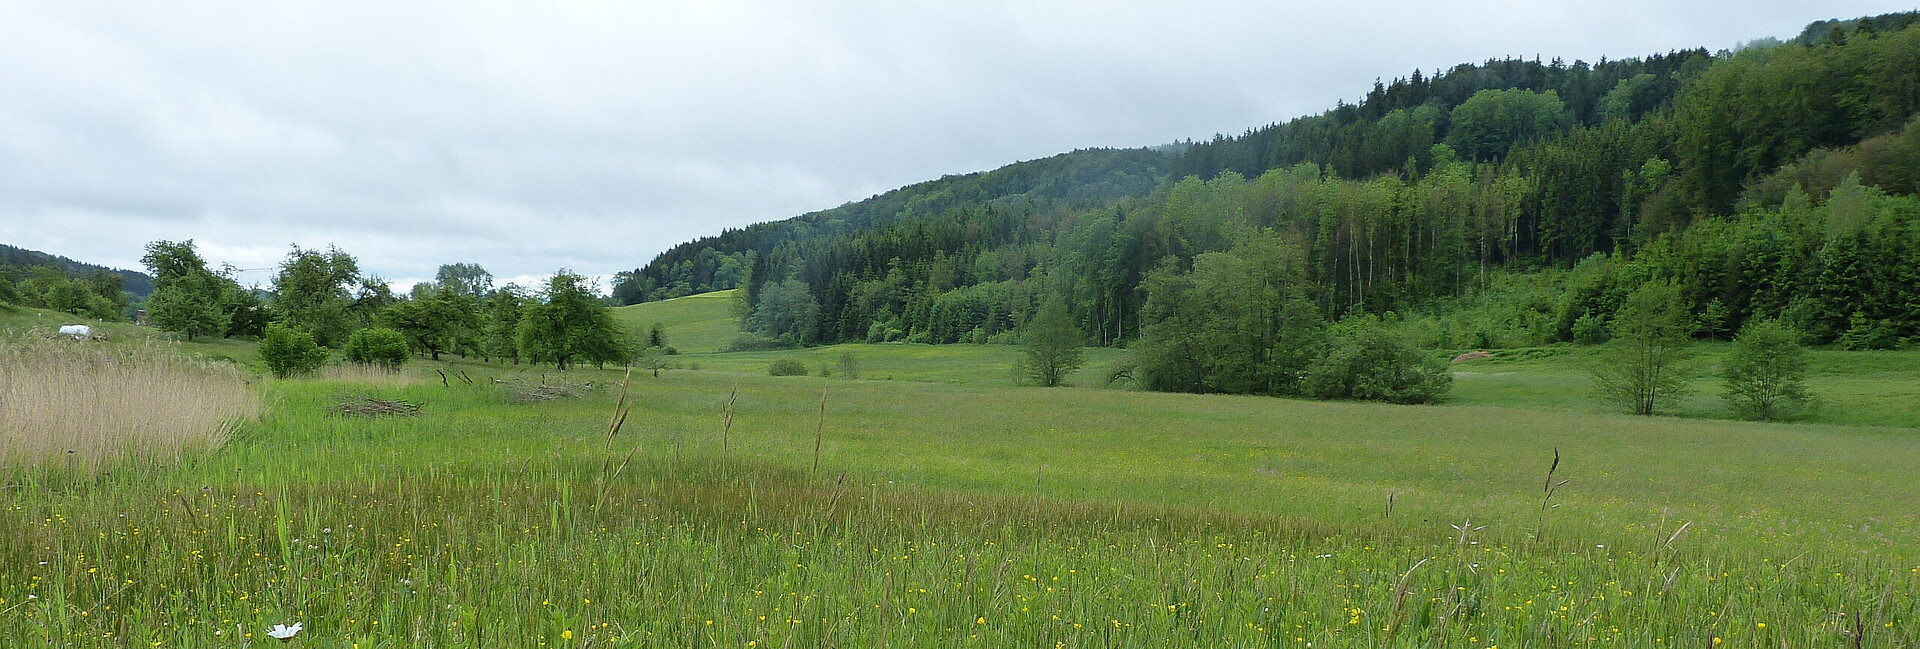 Blick auf eine Landschaft mit Wiesen und Wäldern